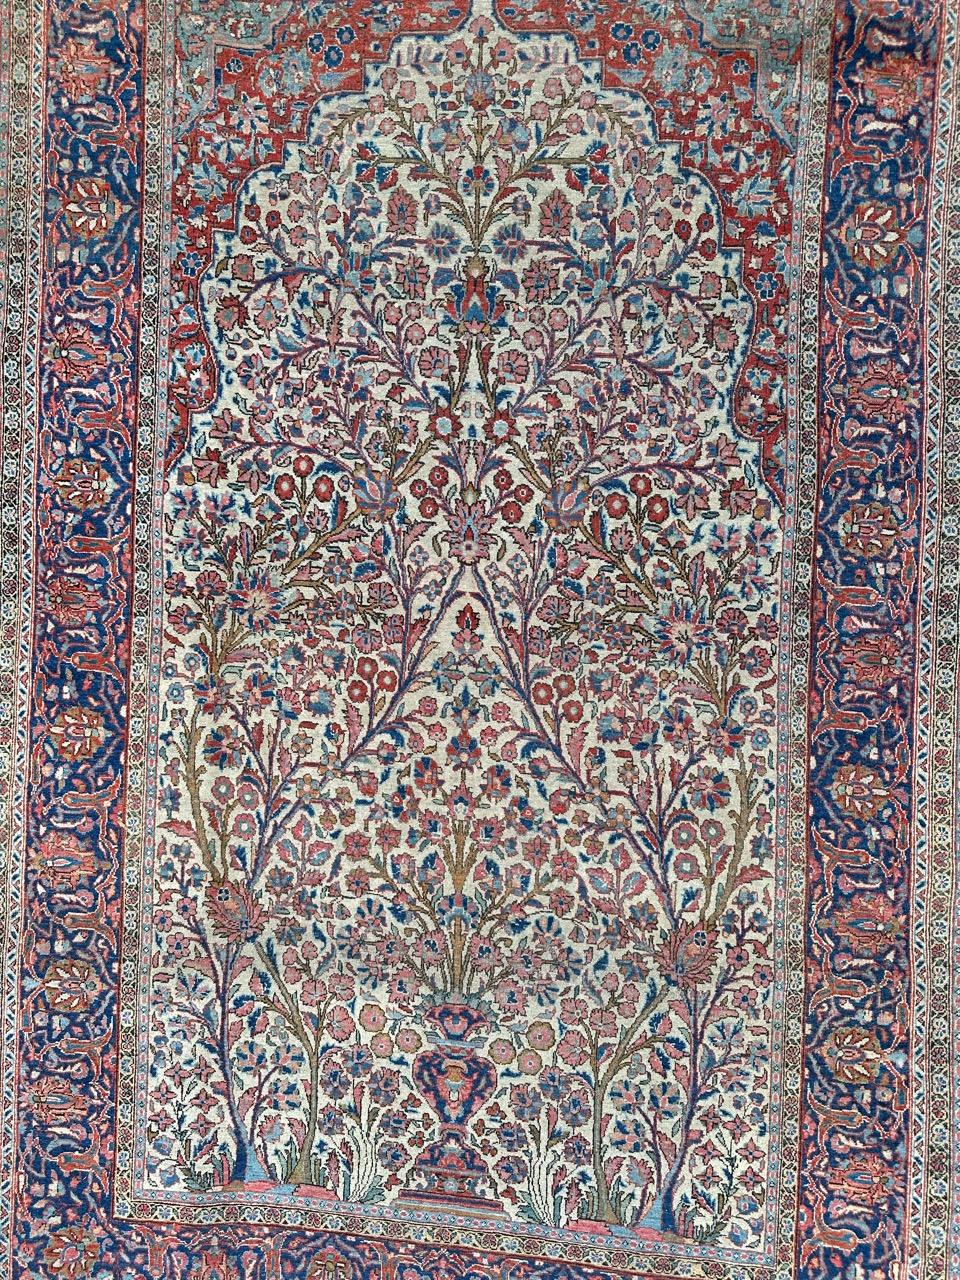 Superbe tapis Kashan du début du 20e siècle présentant un magnifique motif floral et des couleurs naturelles exquises. Ce tapis est un chef-d'œuvre d'artisanat, entièrement et finement noué à la main avec du velours de laine sur une base de